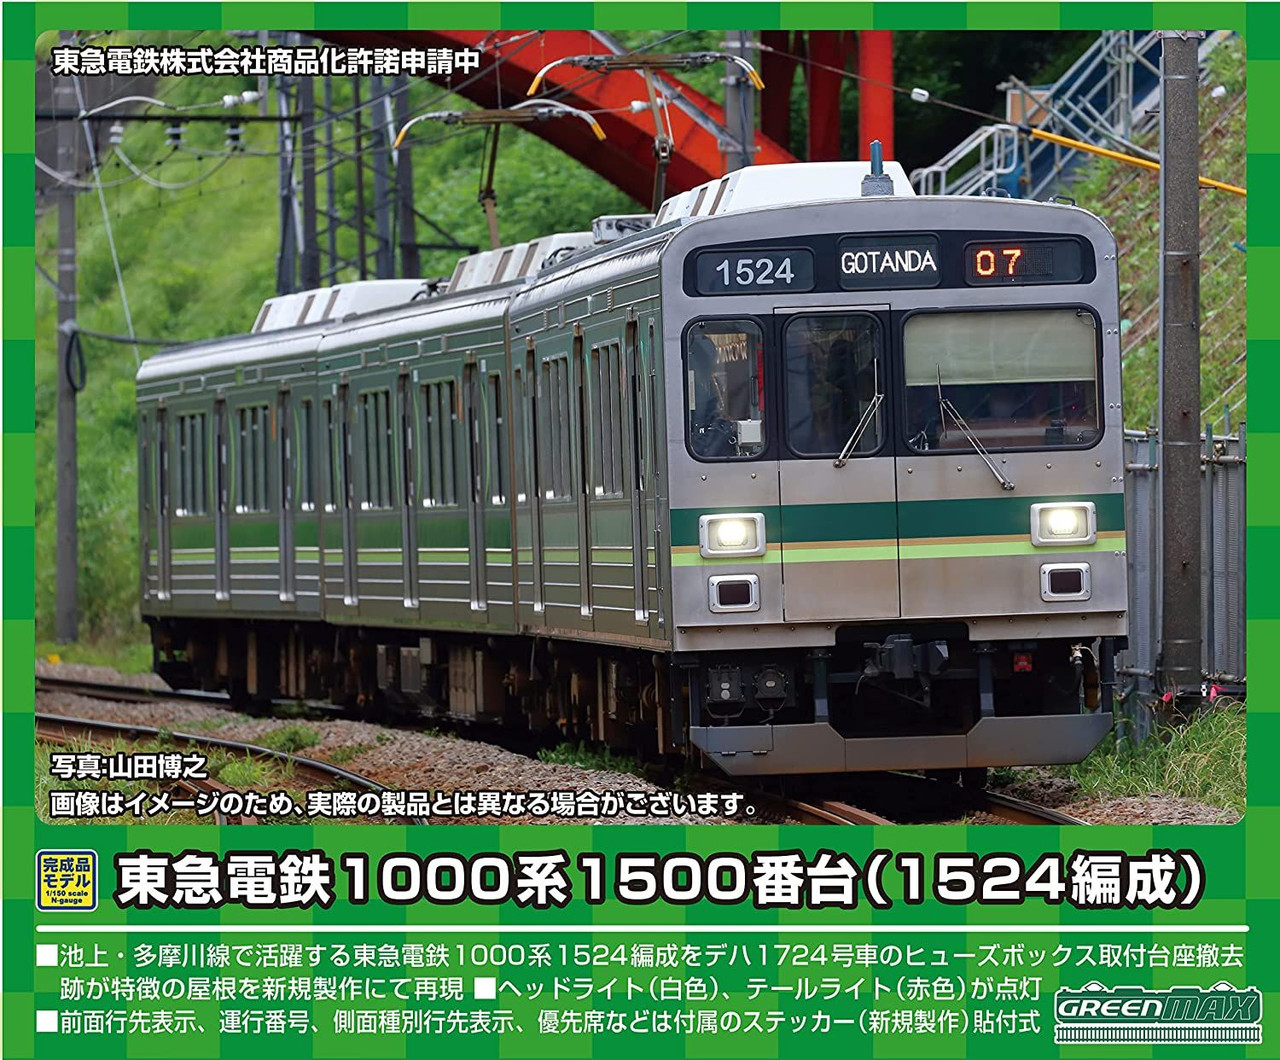 GREENMAX 東急1000系(1500番台・強化型スカート) - 鉄道模型